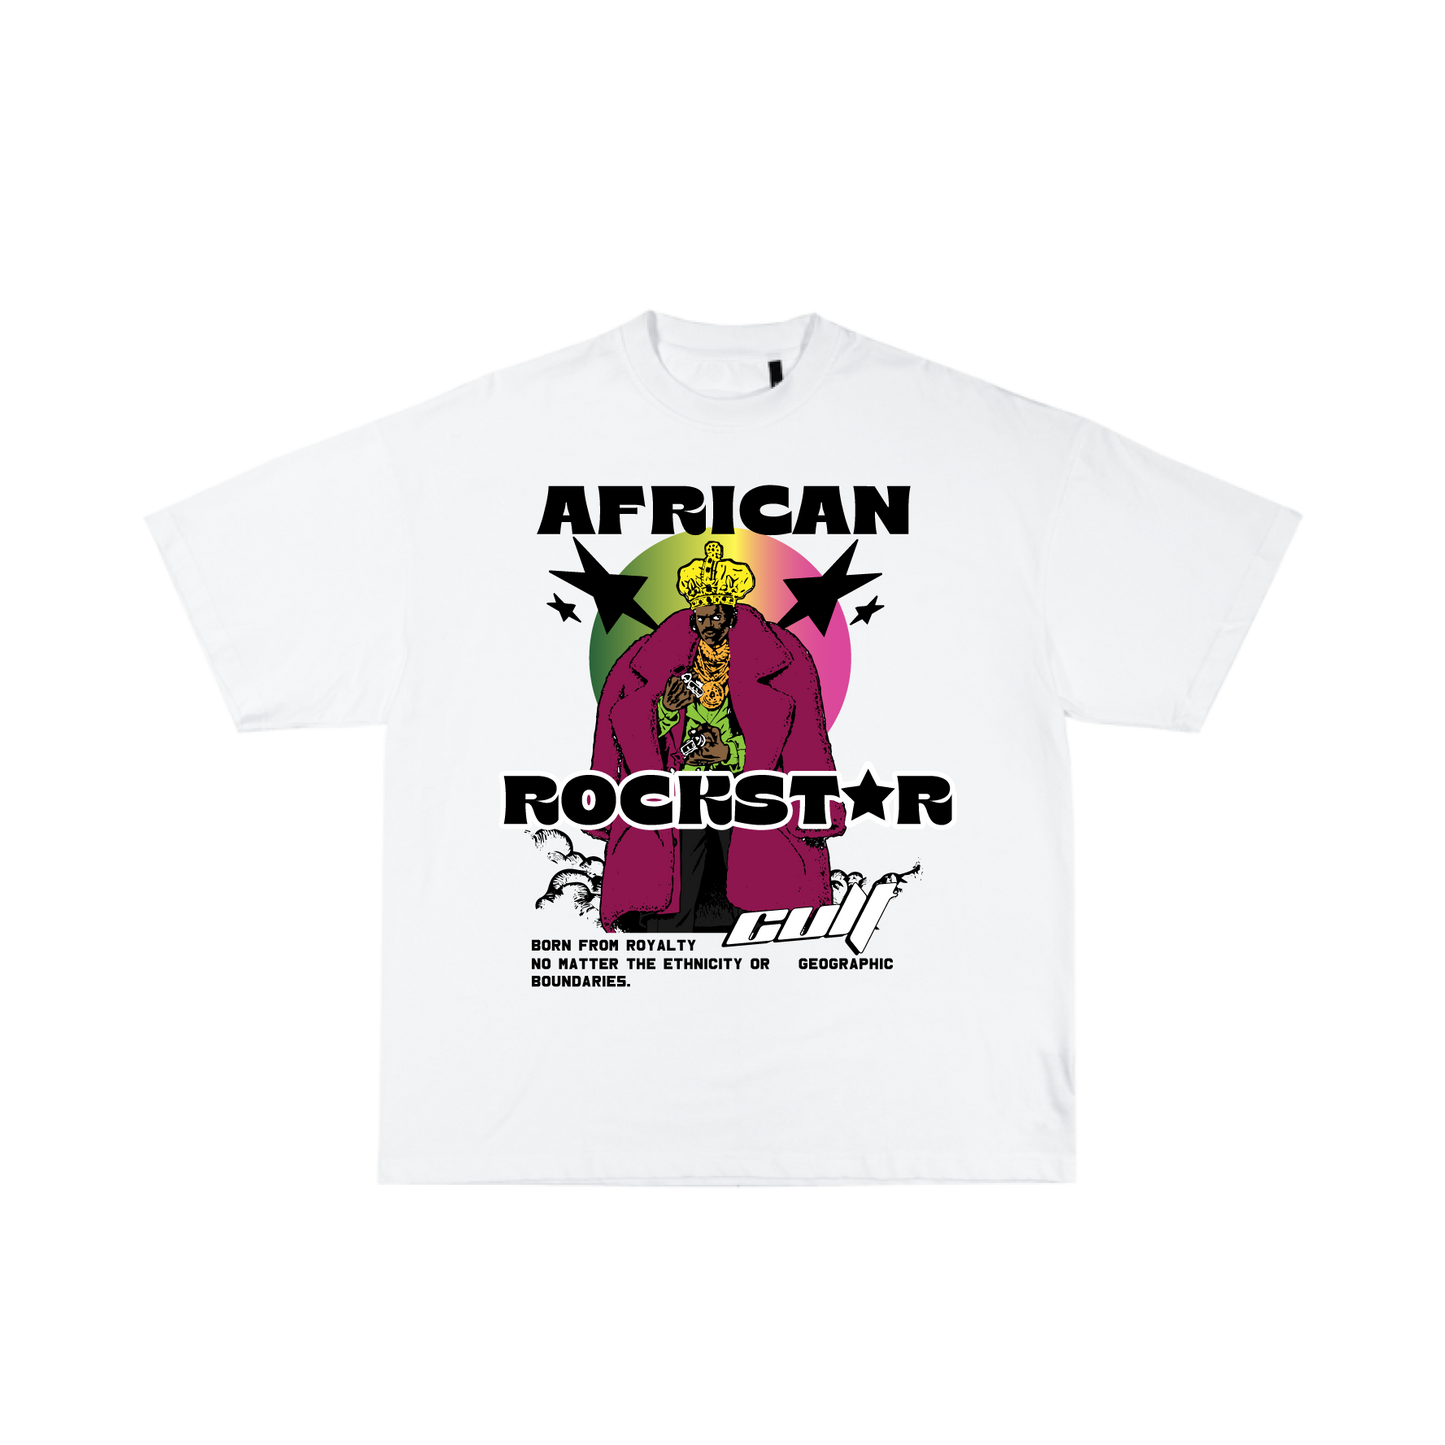 African Rockstar T-shirt